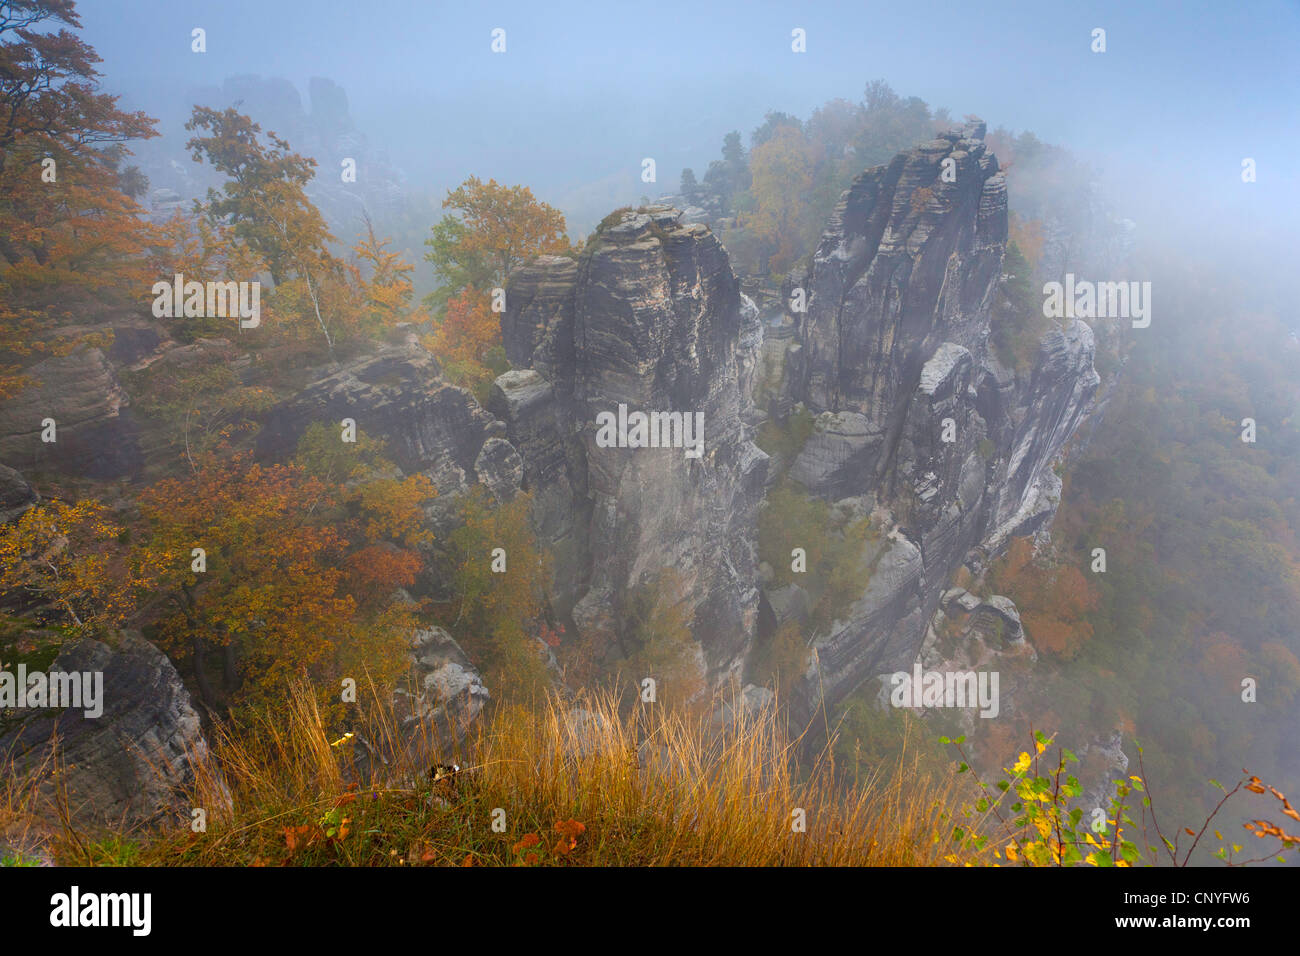 Bastei rock formation près de Rathen, Allemagne, la Saxe, le Parc National de la Suisse saxonne Banque D'Images